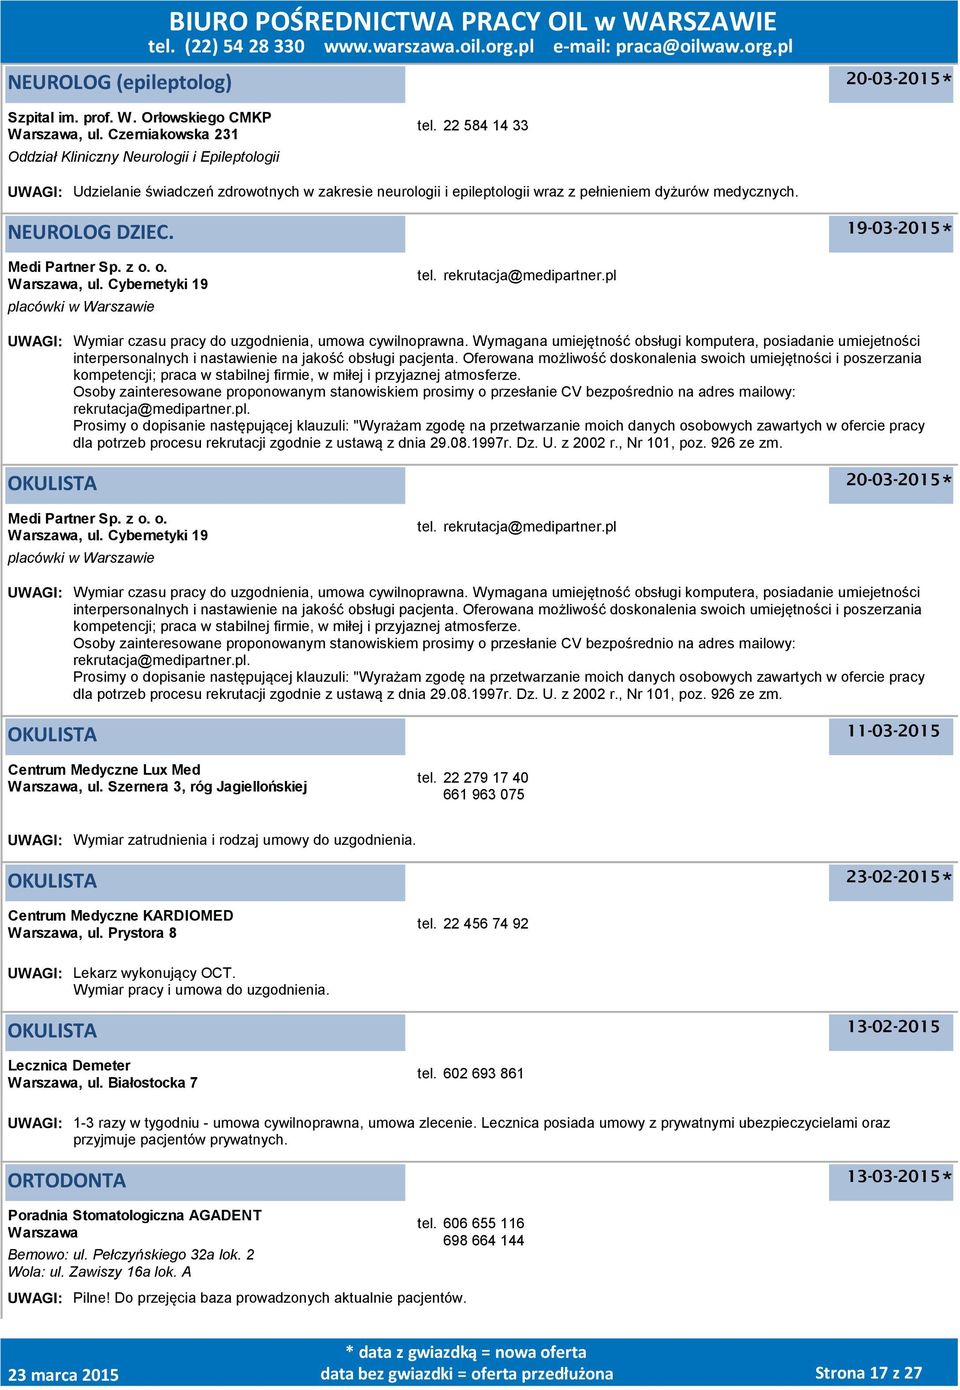 Cybernetyki 19 OKULISTA 11-03-2015 Centrum Medyczne Lux Med, ul. Szernera 3, róg Jagiellońskiej tel. 22 279 17 40 661 963 075 UWAGI: Wymiar zatrudnienia i rodzaj umowy do uzgodnienia.